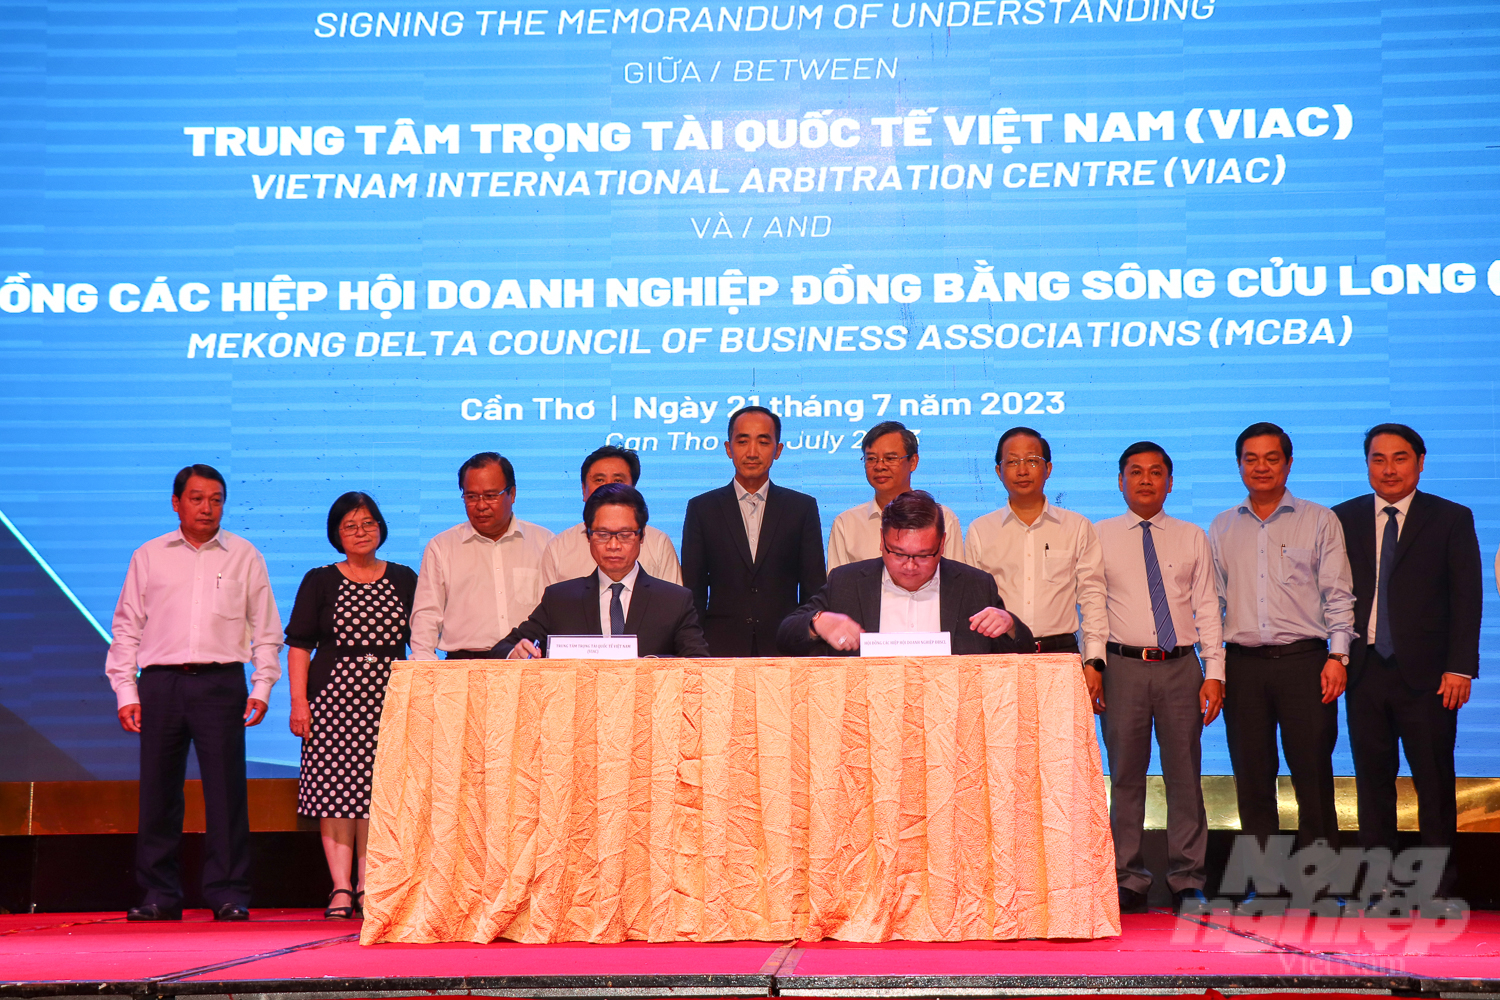 Ký kết Biên bản ghi nhớ hợp tác giữa Trung tâm Trọng tài quốc tế Việt Nam và Hội đồng các Hiệp hội doanh nghiệp ĐBSCL. Ảnh: Kim Anh.